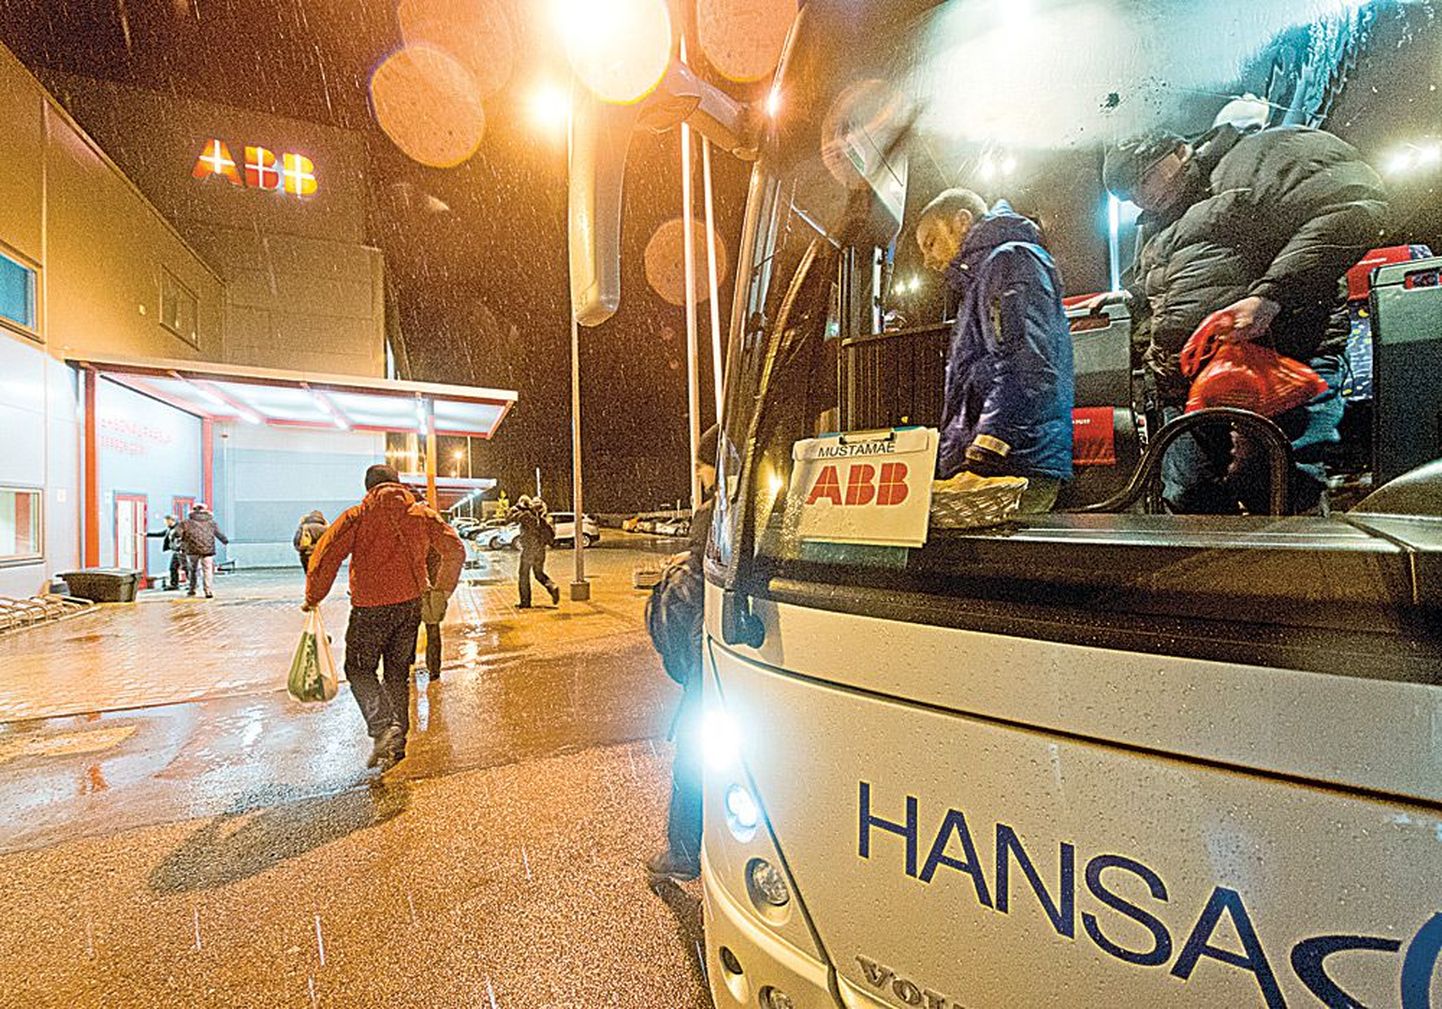 Арендованные предприятием АВВ автобусы каждый день привозят на заводы, расположенные в городе Юри в волости Раэ, 600-700 работников, проживающих в спальных районах столицы, а вечером отвозят их домой.